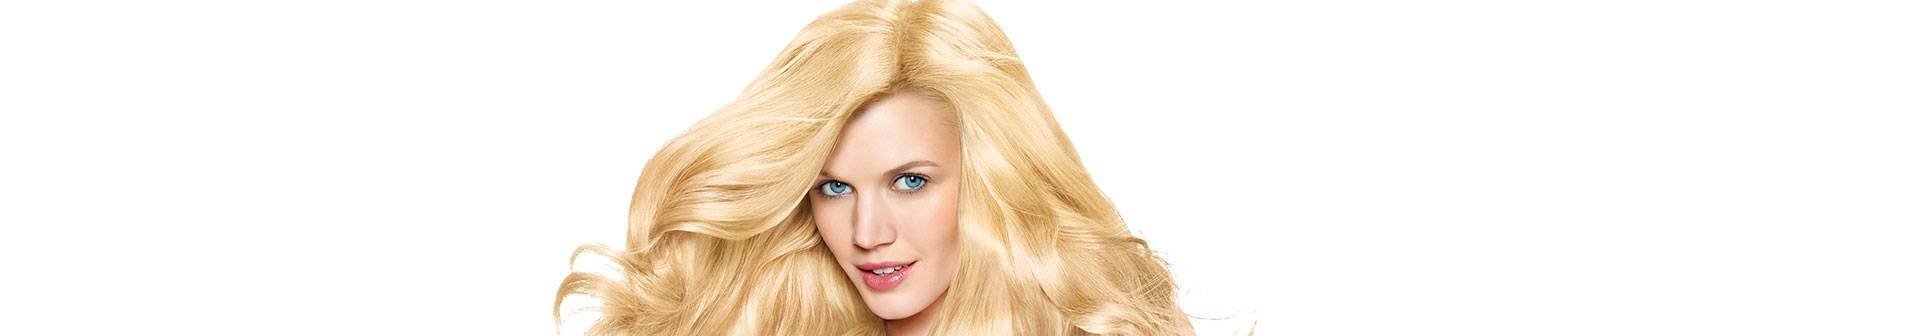 Blond haar zonder de oranje gloed na het verven: vier cruciale tips